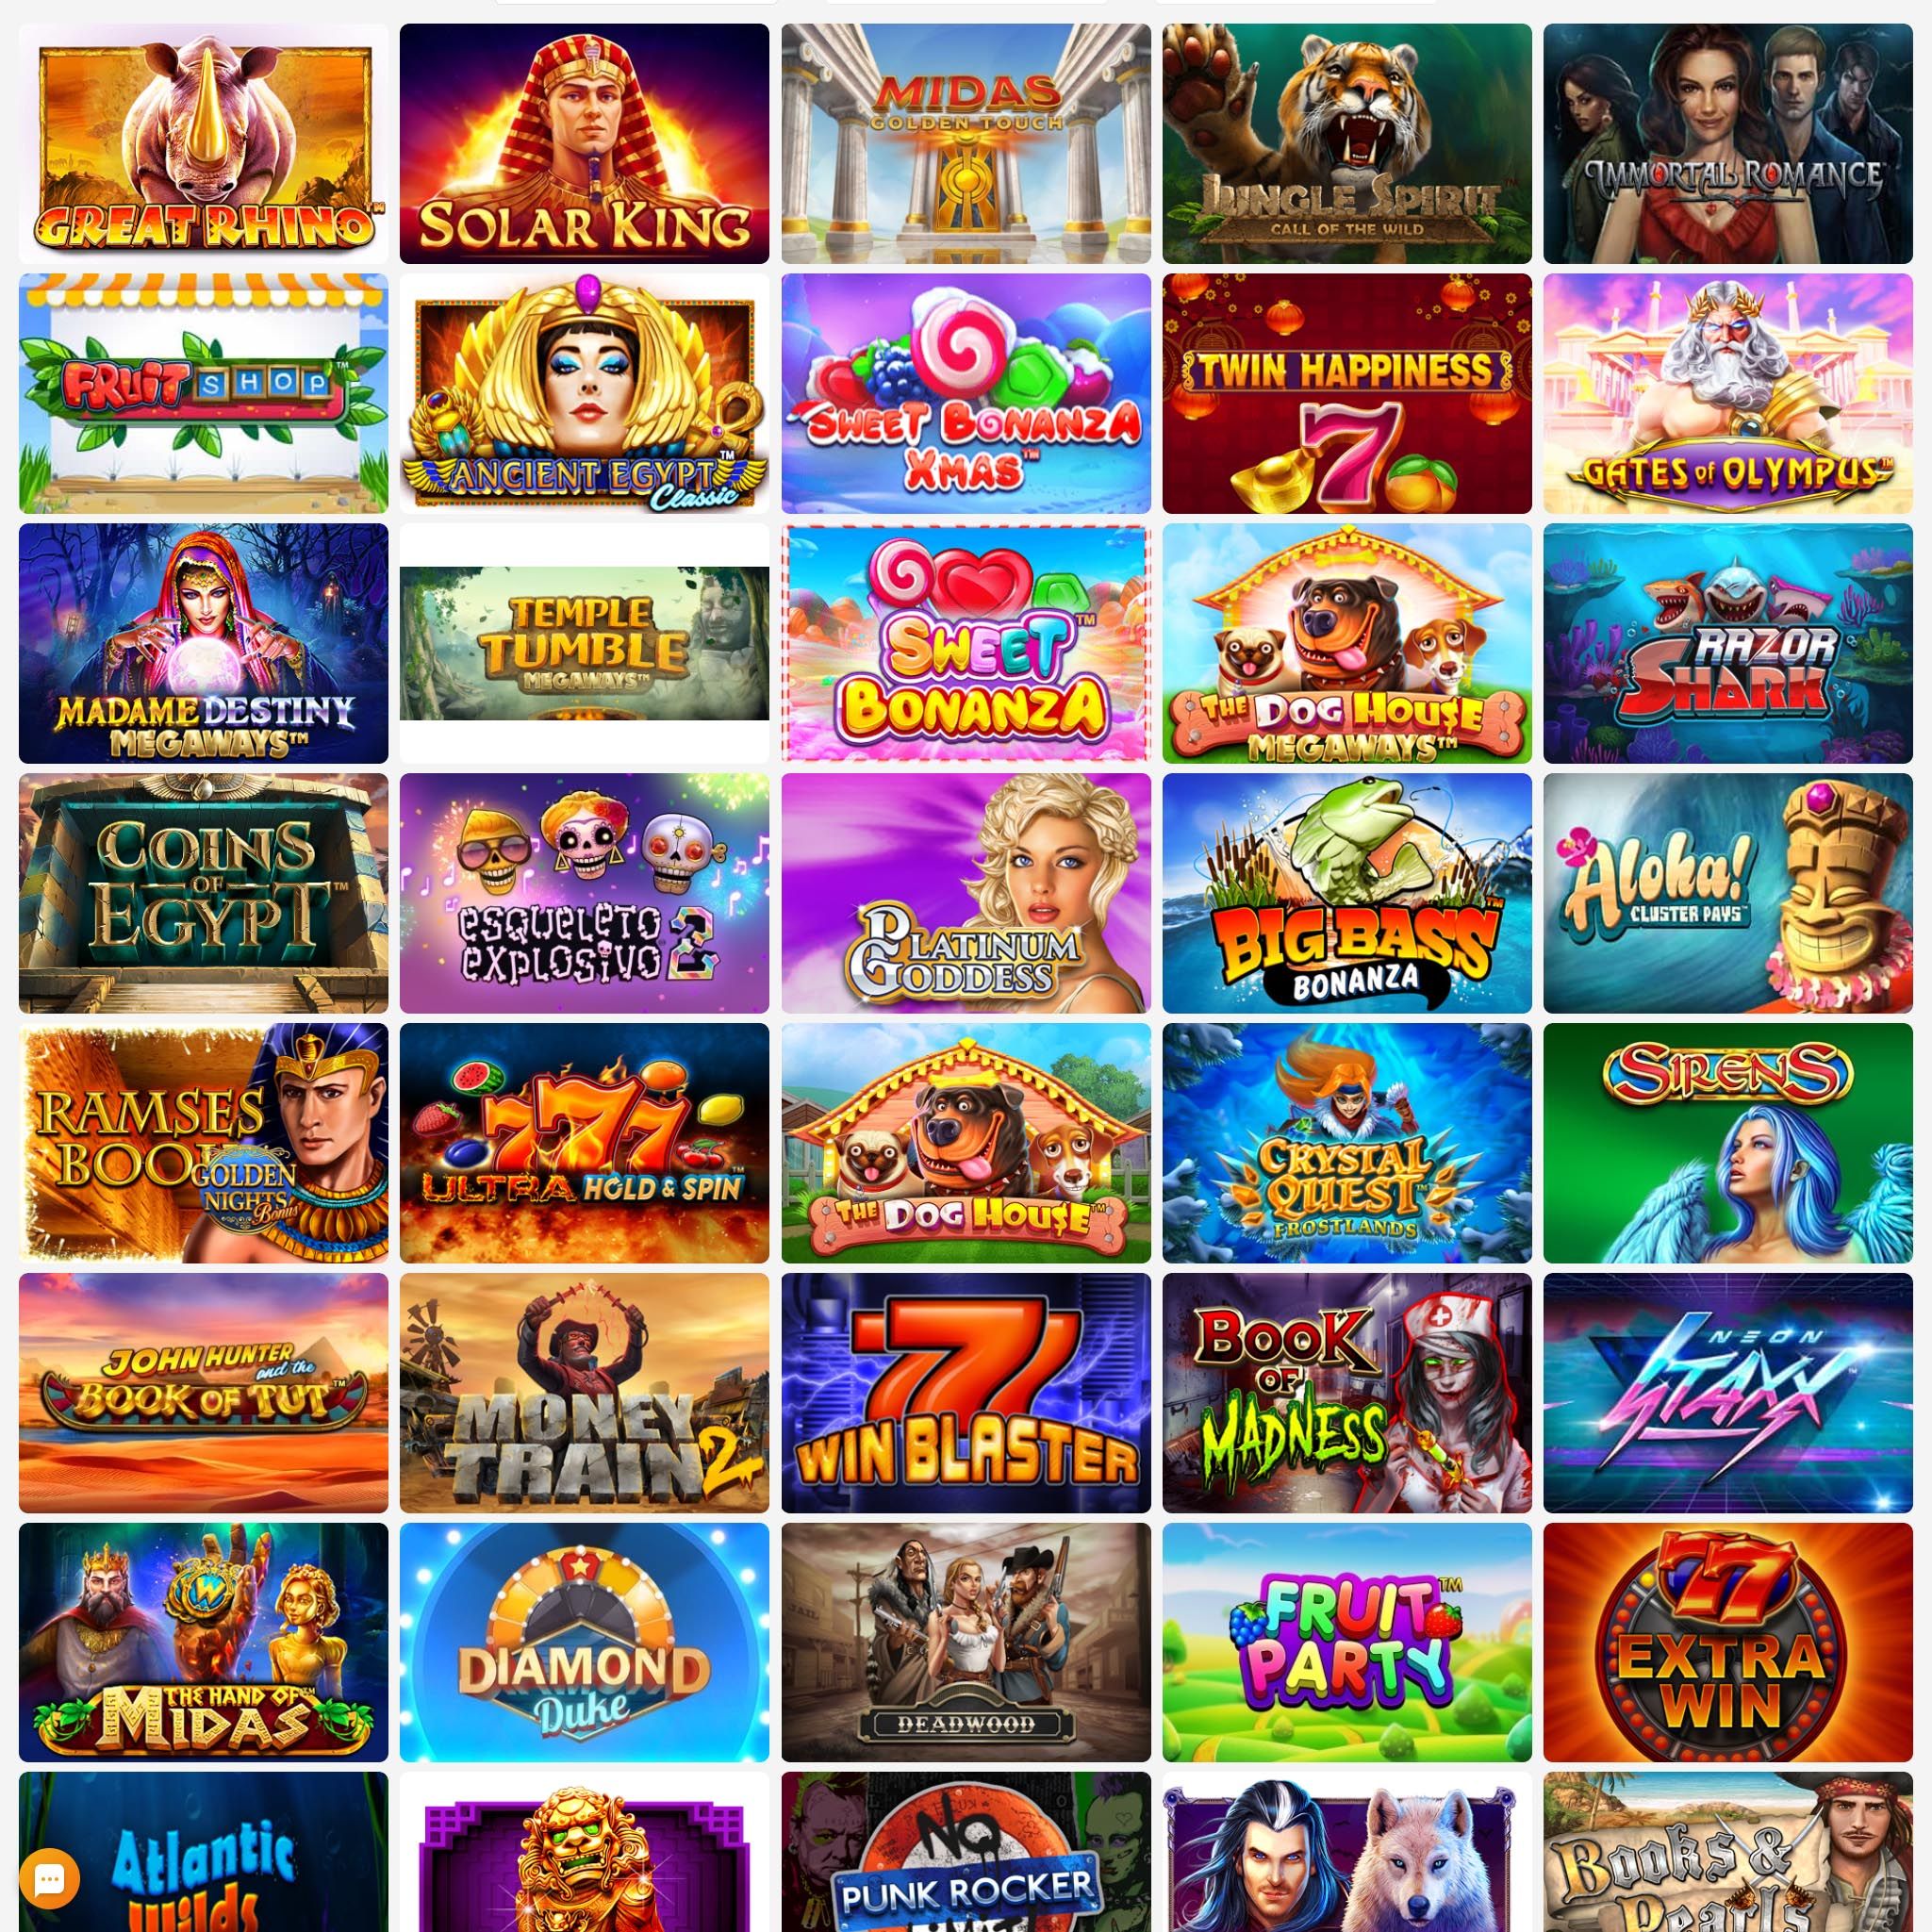 FlipperFlip Casino full games catalogue